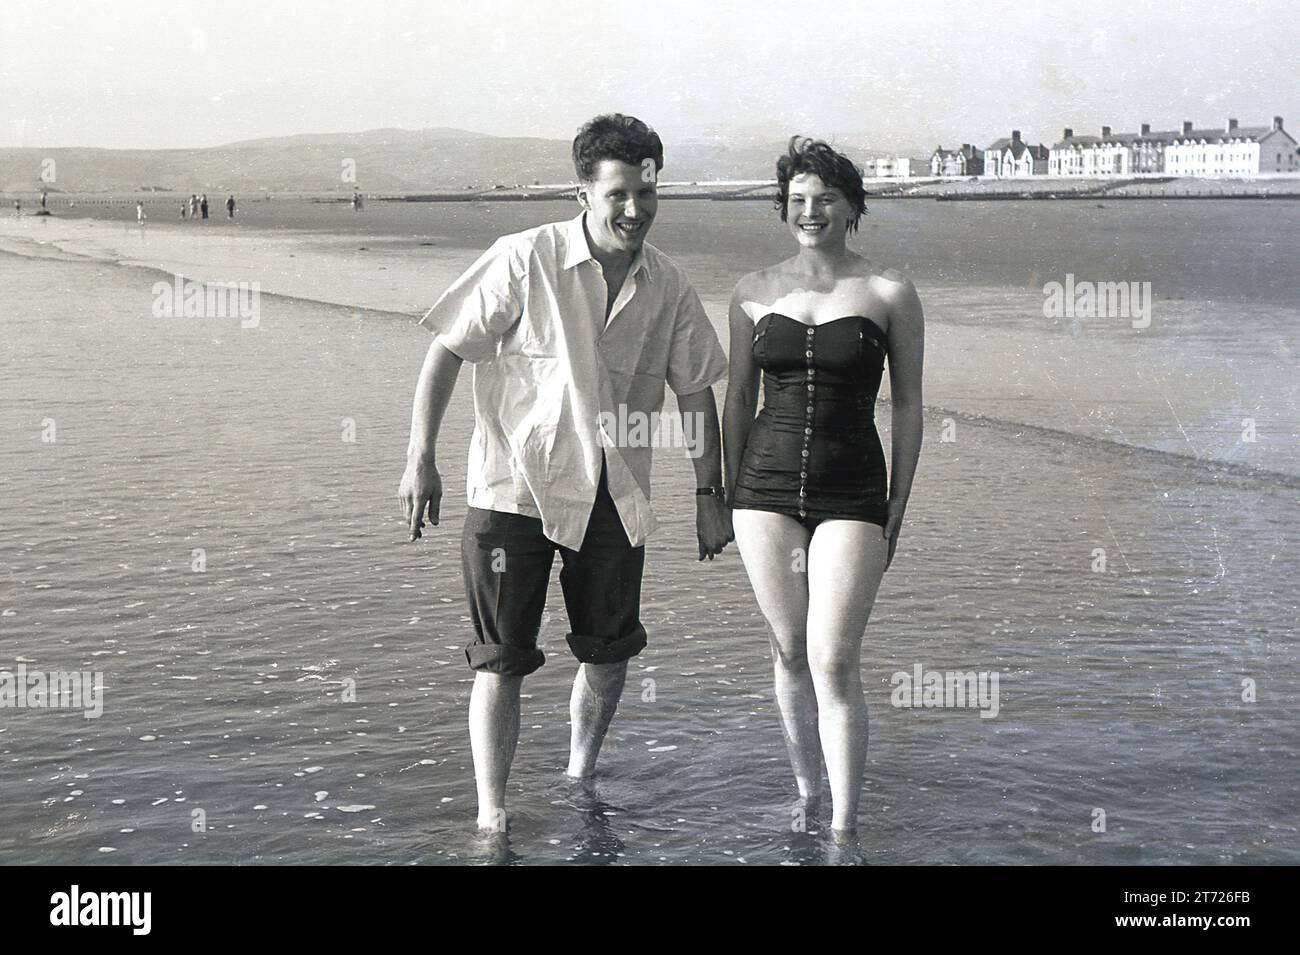 Années 1960, historique, un jeune couple adulte debout dans l'eau de mer à côté d'une plage se tenant par la main, Angleterre, Royaume-Uni. La jeune femme est en maillot de bain, tandis que le jeune mn a son pantalon enroulé, une chose masculine traditionnelle à faire au bord de la mer. Banque D'Images